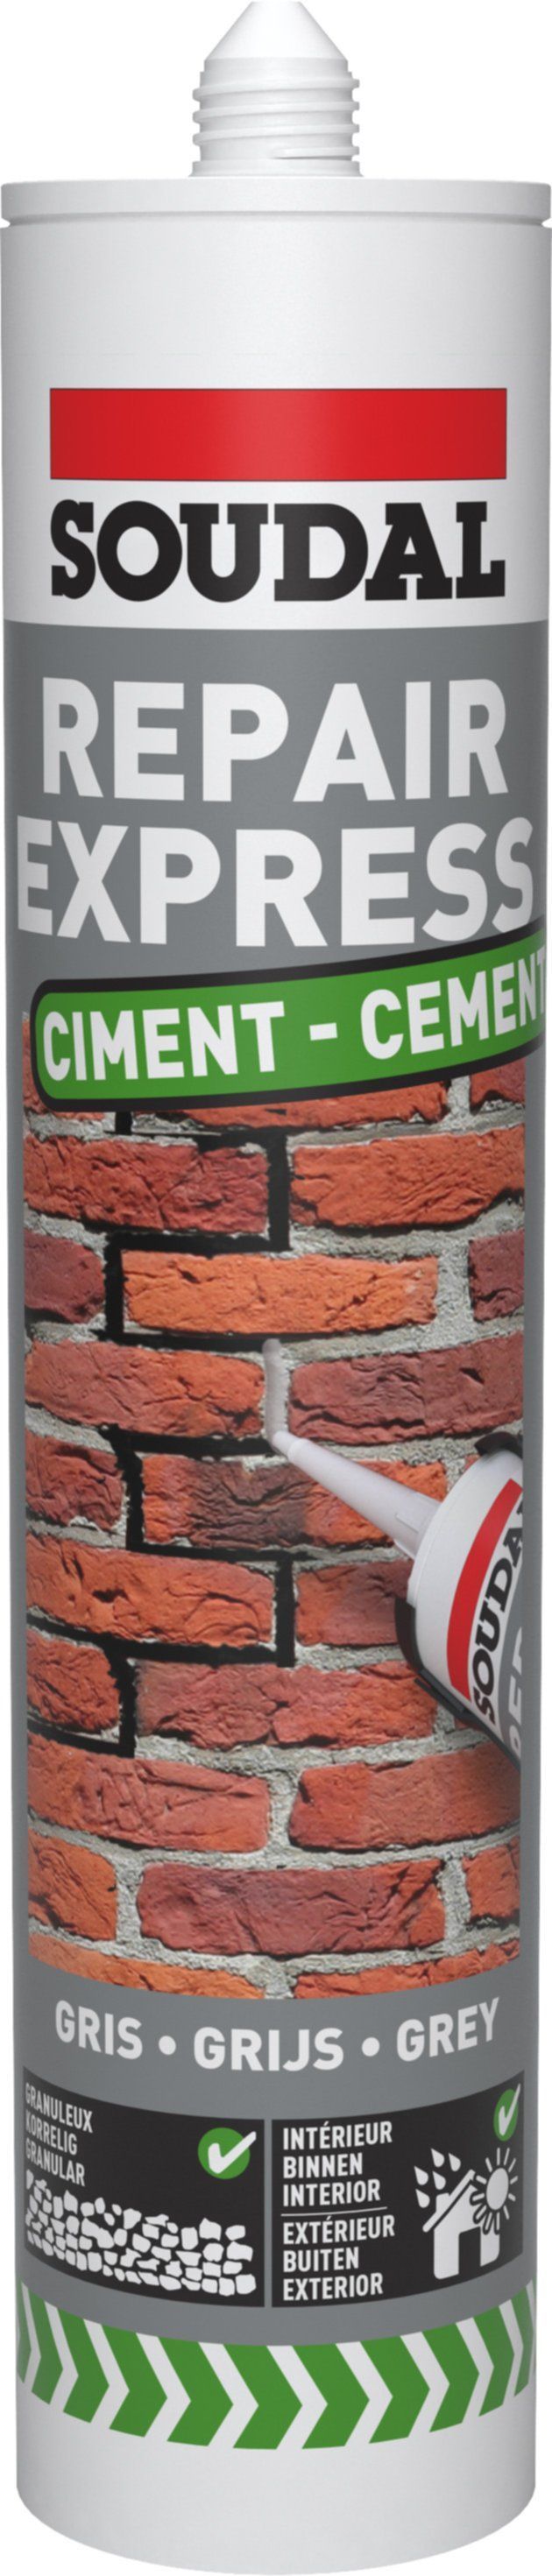 Enduit de rebouchage Repair express ciment gris 290 ml